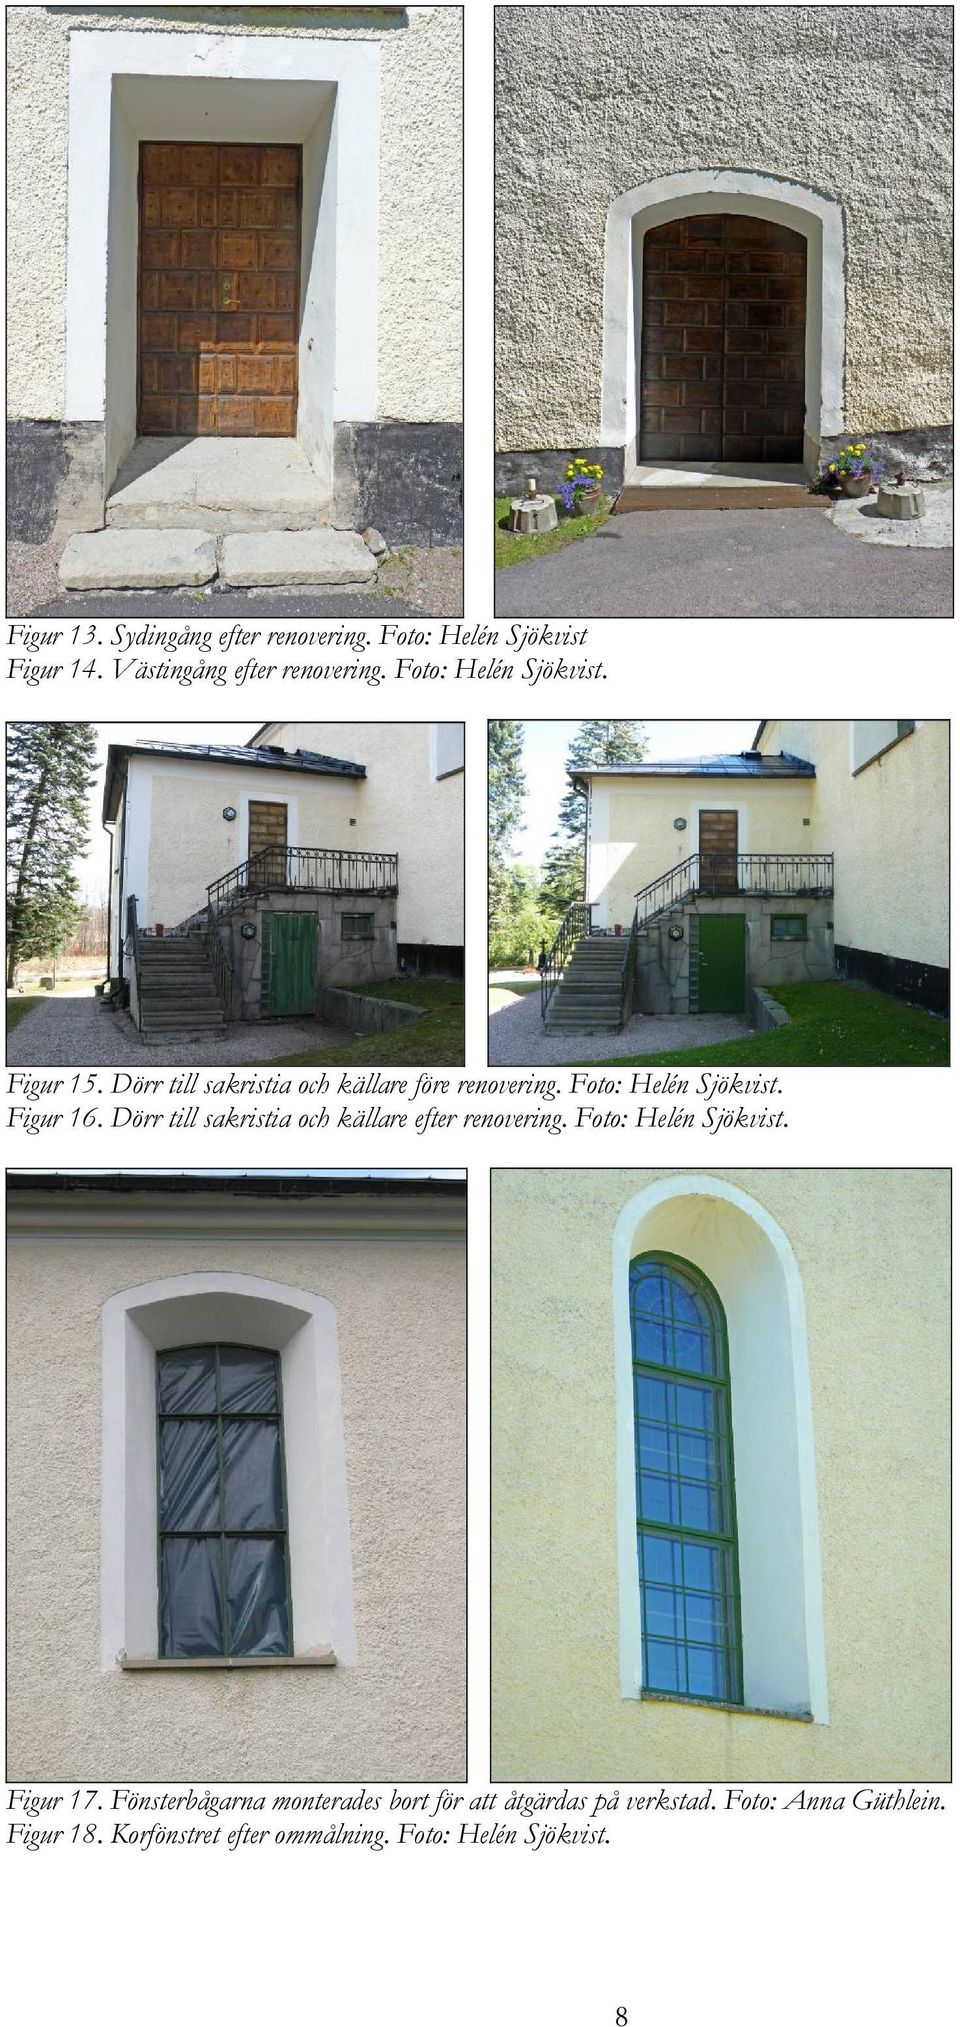 Figur 16. Dörr till sakristia och källare efter renovering. Foto: Helén Sjökvist. Figur 17.